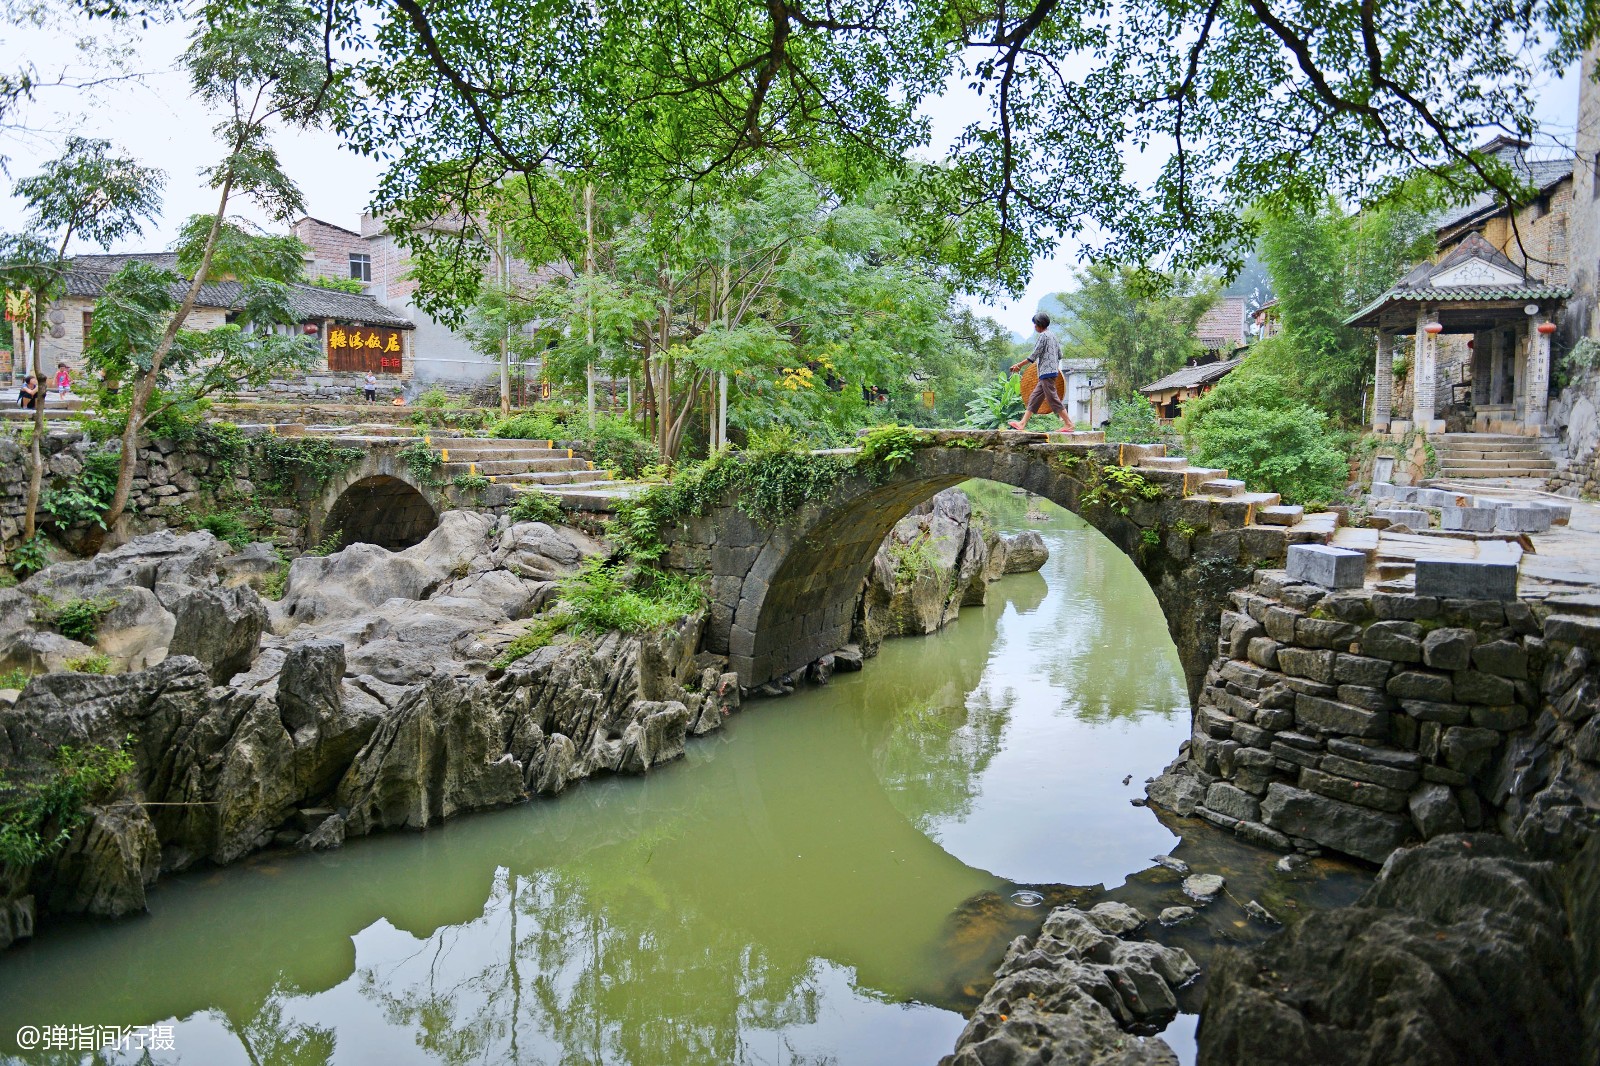 小桥流水人家,中国5个最美水乡古镇,第1个最好玩可坐在水里吃饭